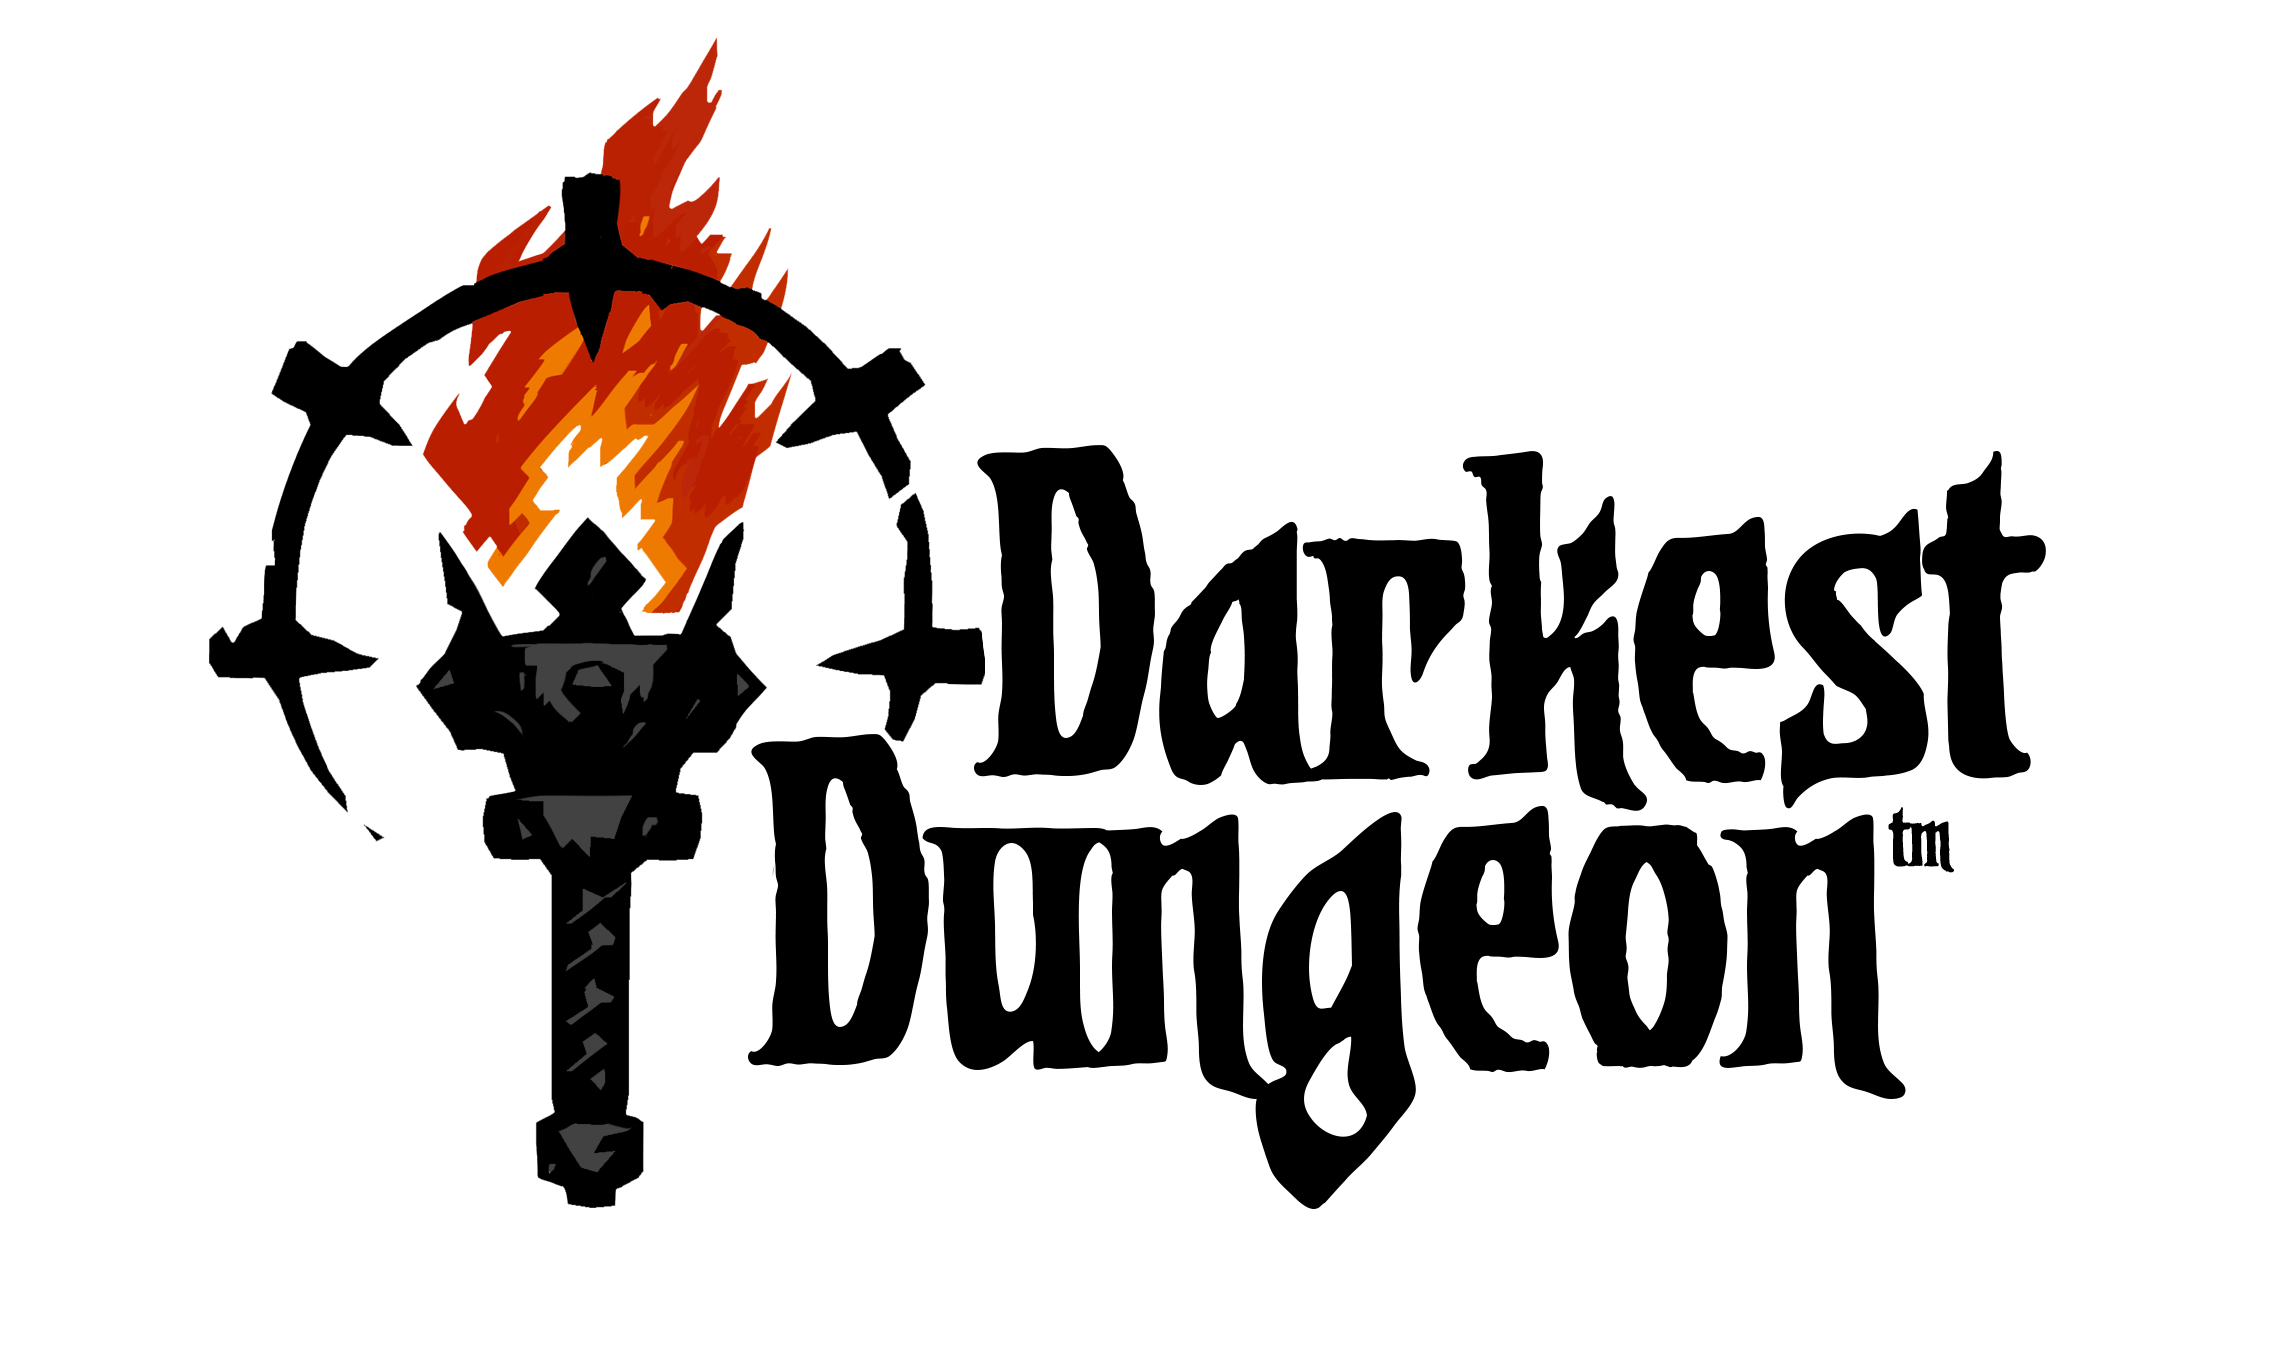 DD_logo